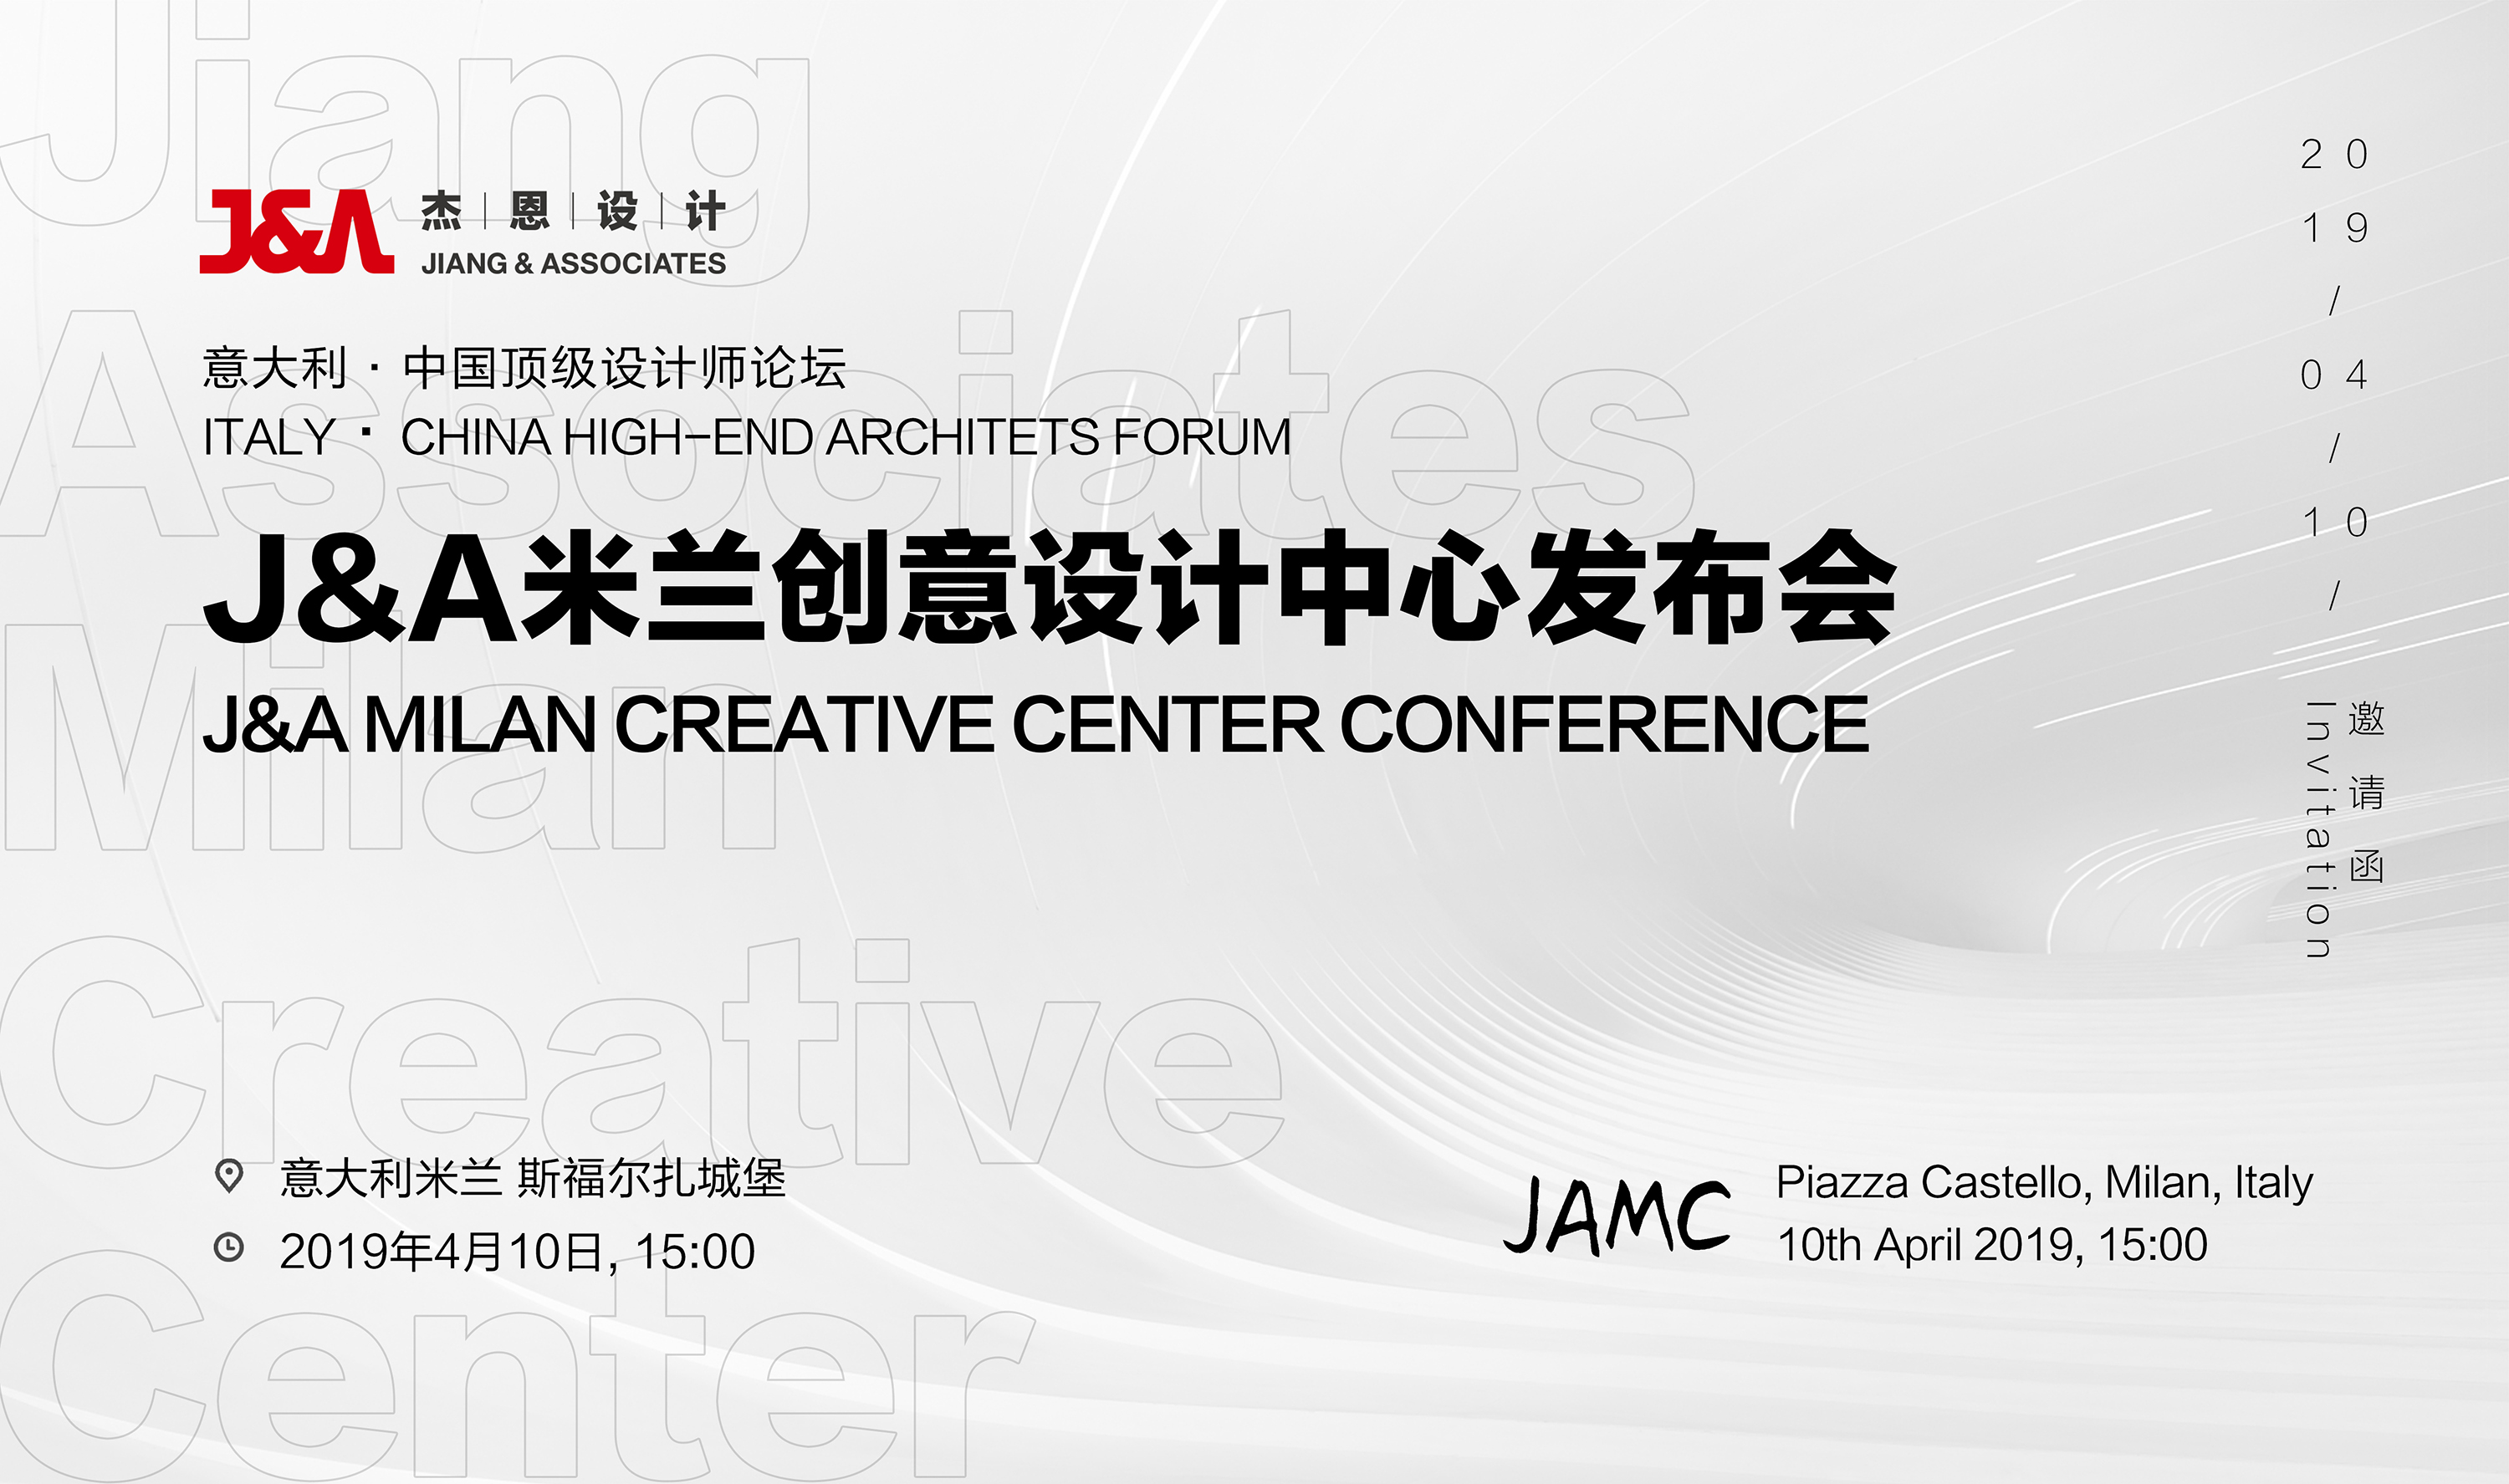 J&A米兰创意设计中心JAMC发布会暨签约仪式